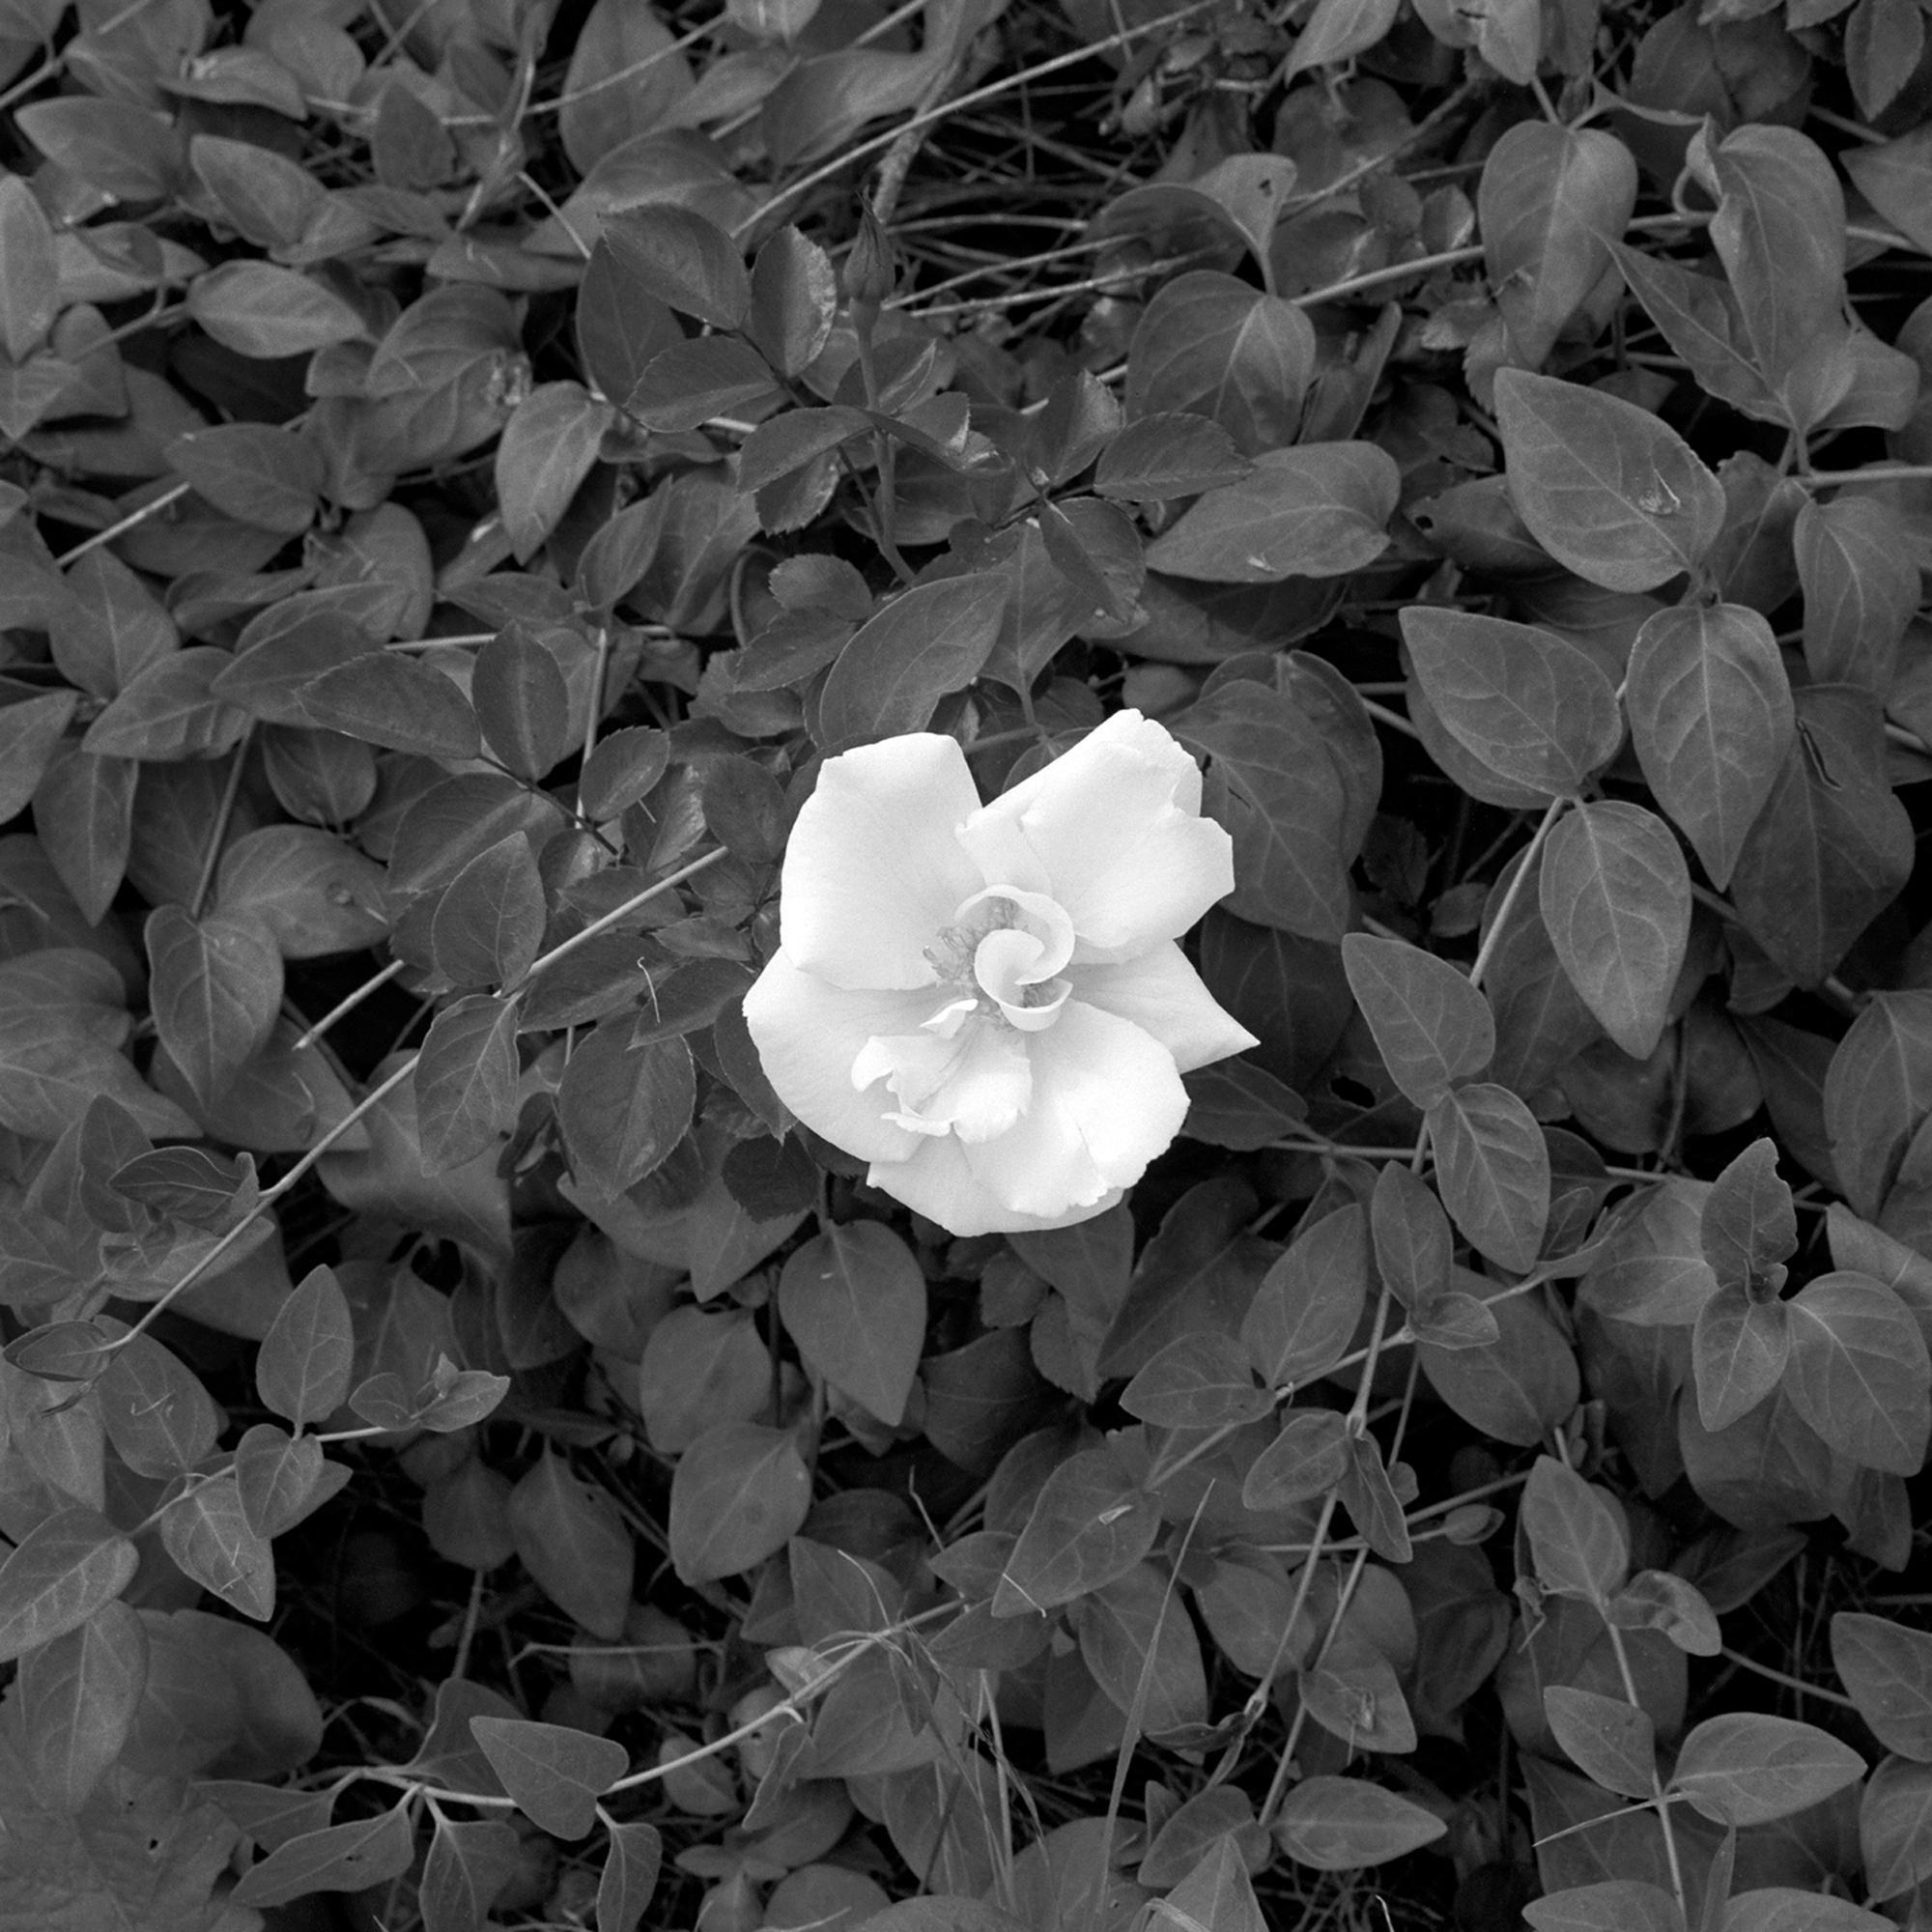 Jenny Lynn Black and White Photograph - Gardenia: black & white framed photograph, flower w/ vines & leaves in landscape